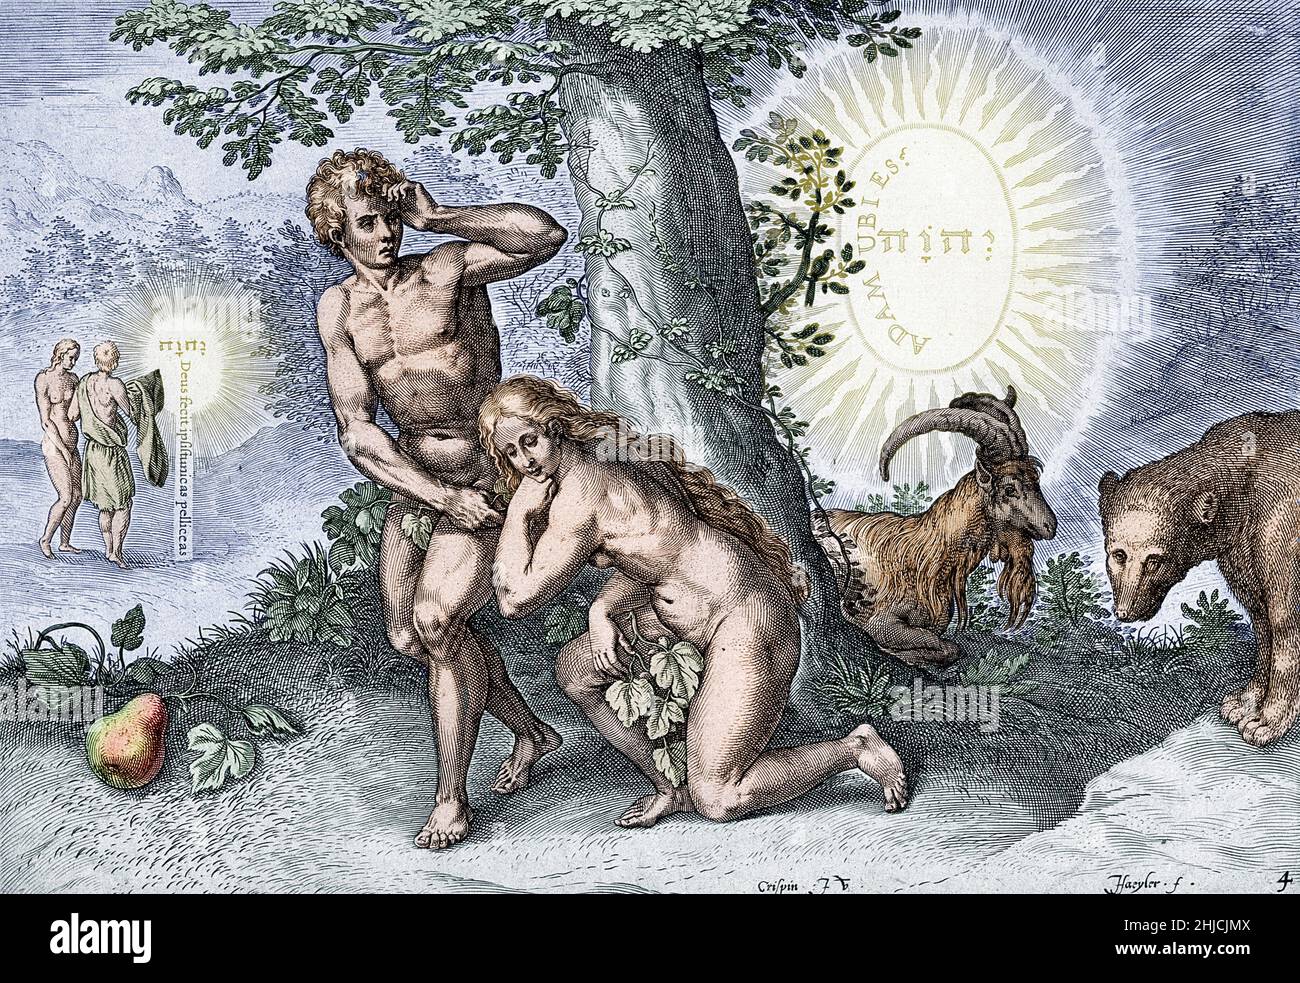 Die kolorierte Abbildung zeigt Adam und Eva, die ihre Blöße im Garten Eden verbergen, nachdem sie die verbotenen Früchte gegessen haben. In der Ferne, links, empfangen sie Kleider von Gott. Das Tetragrammaton, 'Jahwe', erscheint in hebräischer Sprache in der Mitte der beiden Kreise im Hintergrund. Auf der linken Seite steht eine lateinische Inschrift mit der Aufschrift „Gott machte sie aus Haut“; auf der rechten Seite steht auf dem Lateinischen „Adam, Wo sind Sie?“. Kolorierung eines Liniengravur von J. Haeyler nach C. van den Broeck, um 1570. Stockfoto